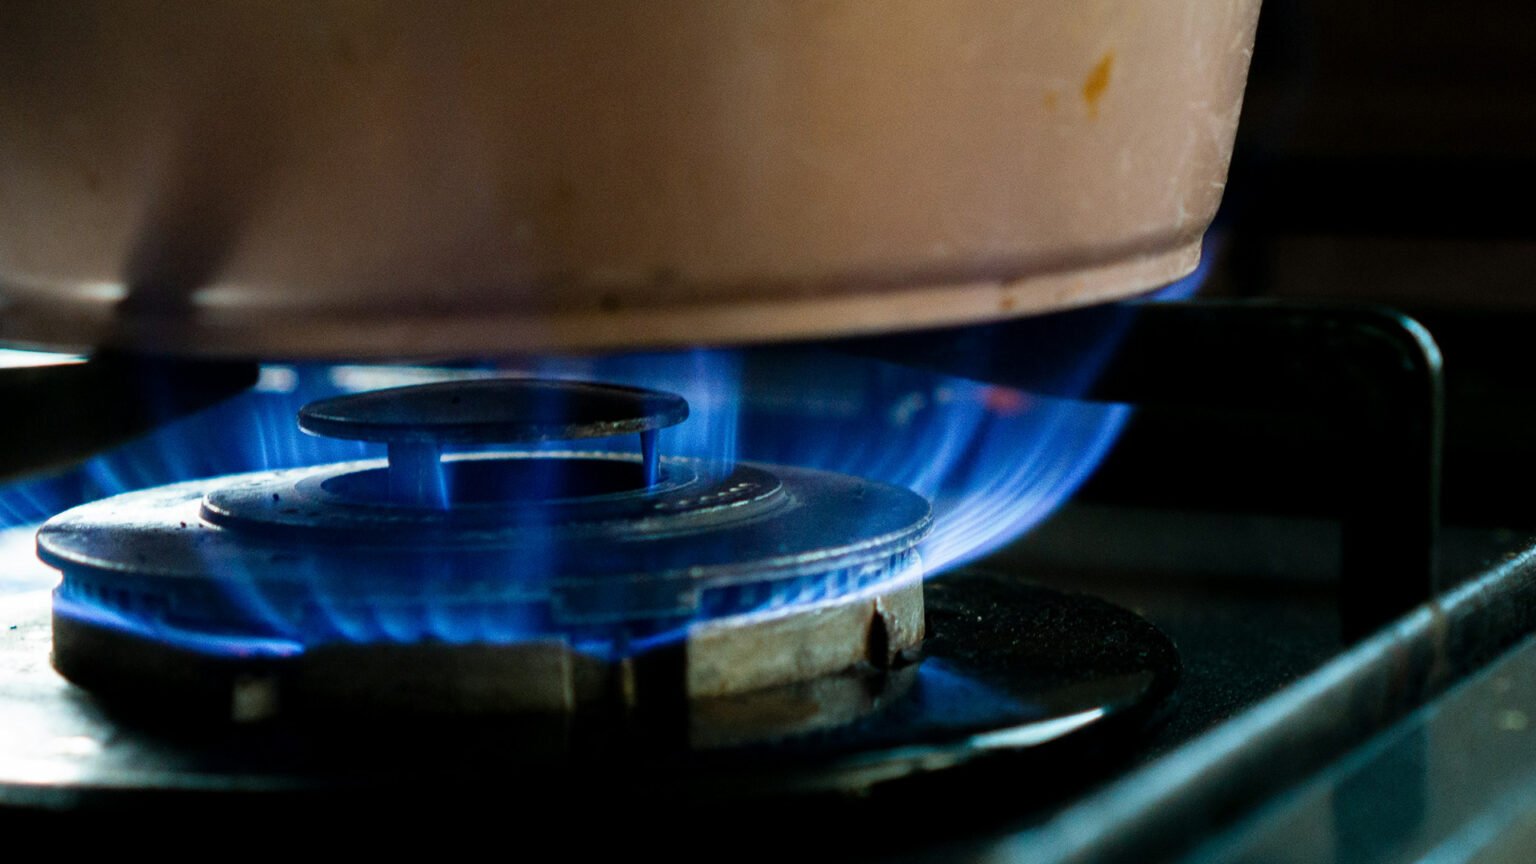 nuevos cuadros tarifarios del servicio de gas natural por red en todo el país que implican aumentos promedio del 320%,